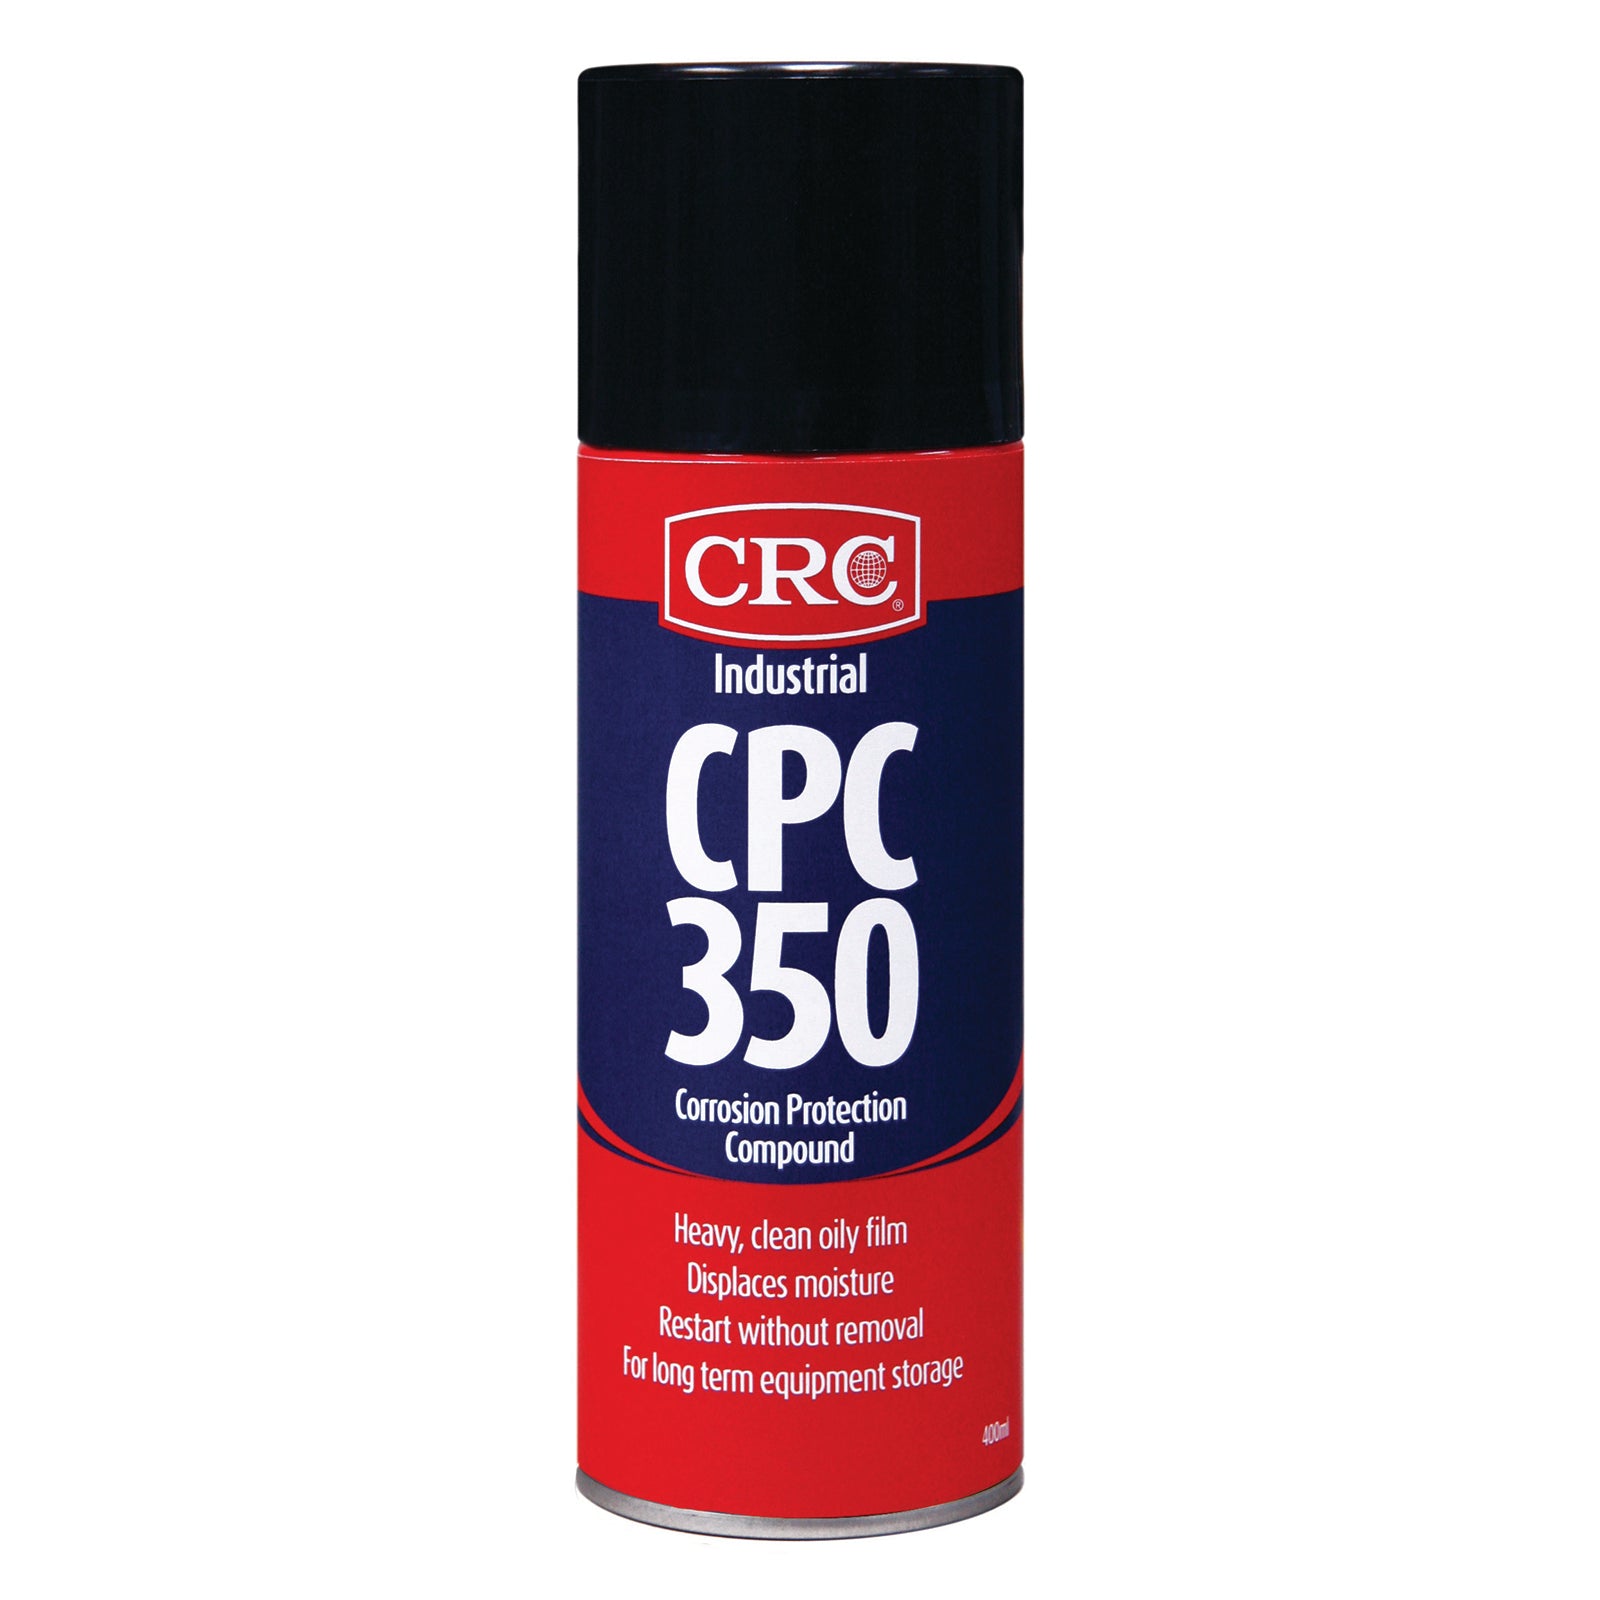 CRC CPC 350